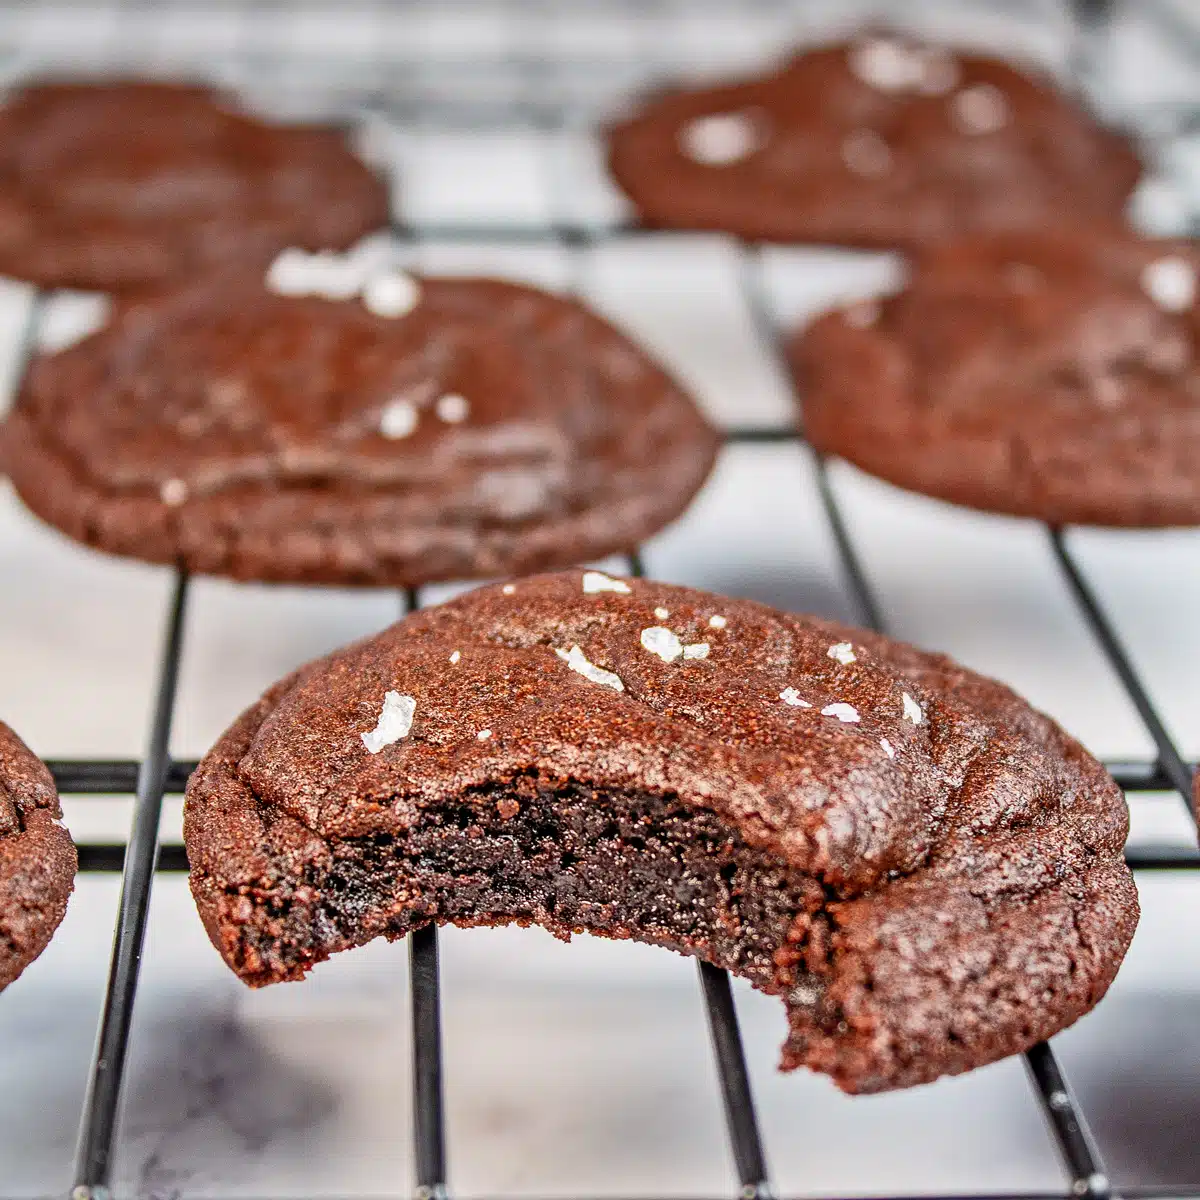 チョコレートクッキーの正方形のイメージ。